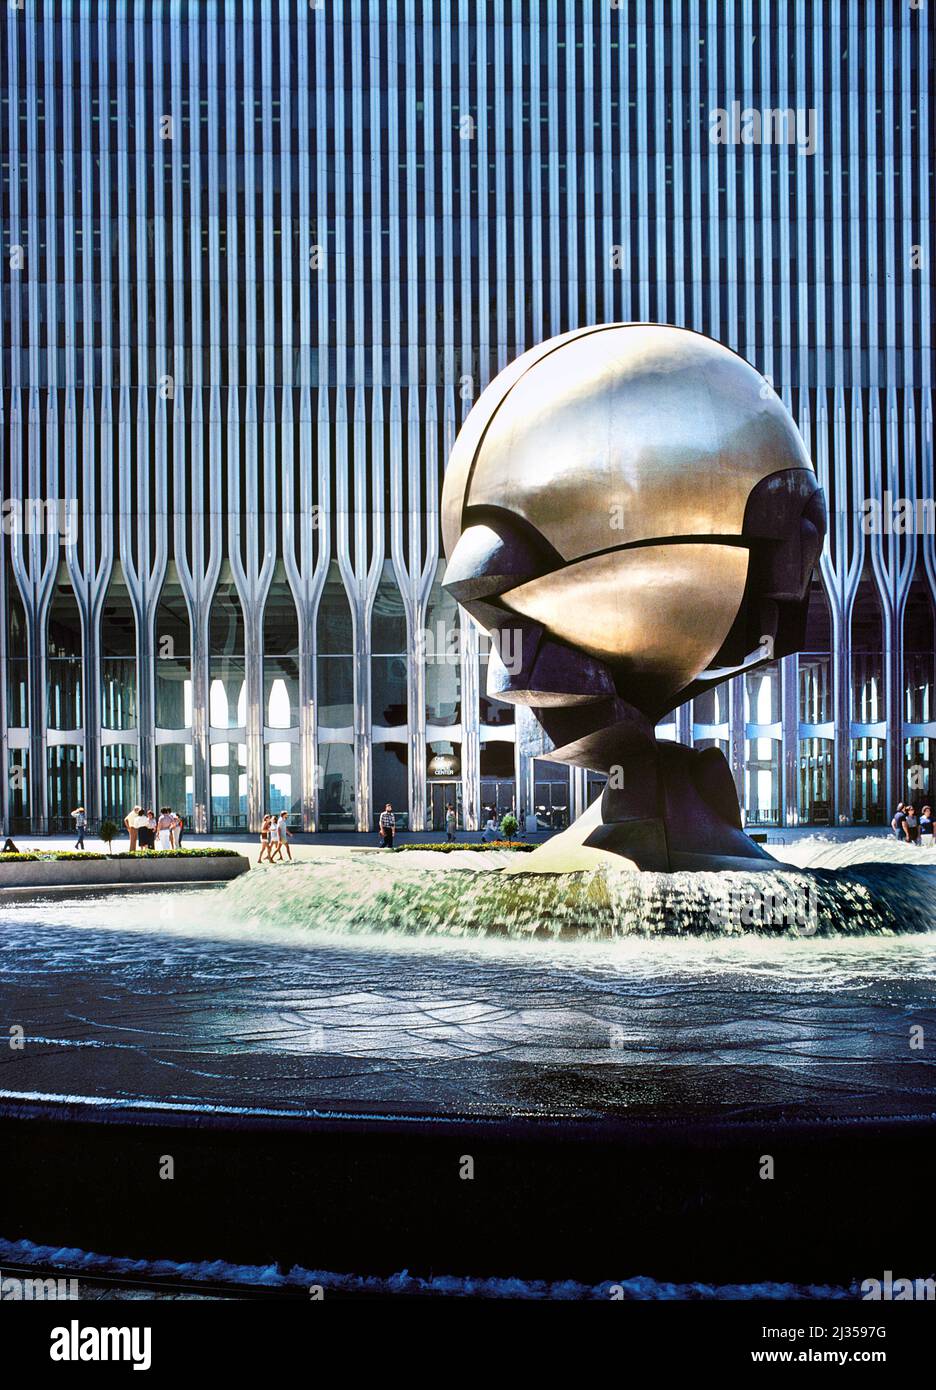 Eingangsbögen mit Kugel an der Plaza Fountain Skulptur von Fritz Koenig, World Trade Center, New York City, New York, USA, Sammlung Balthazar Korab, 1976 Stockfoto